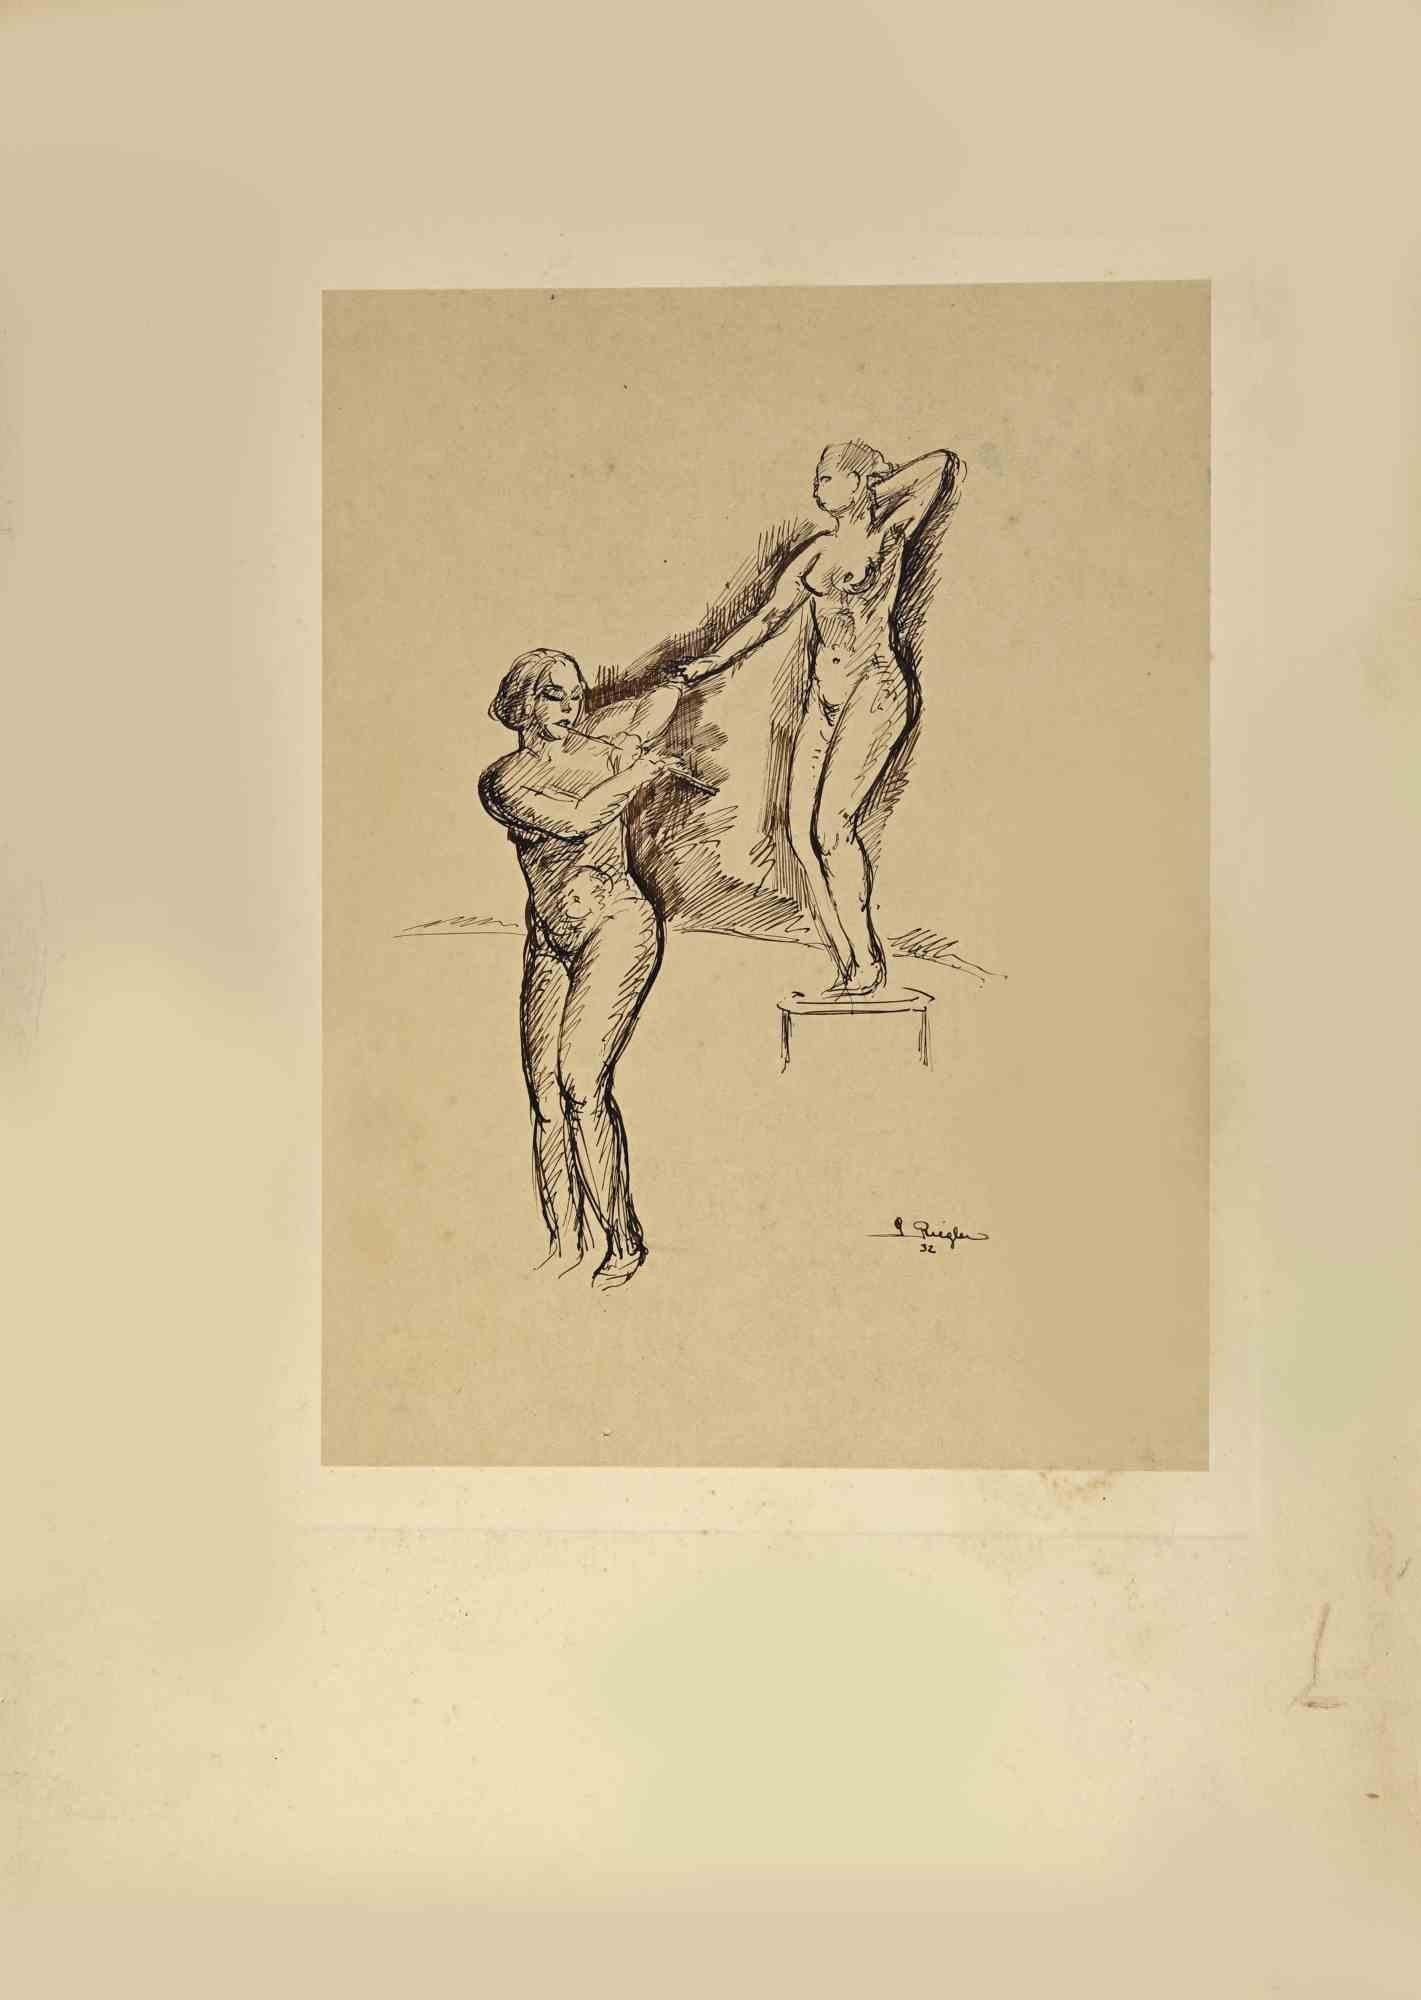 Women Nudes ist ein Kunstwerk, das von dem Künstler G. Riegler realisiert wurde.

Zeichnung in Tusche auf Papier, vom Künstler in der rechten unteren Ecke handsigniert und datiert.

Das Kunstwerk ist auf Karton geklebt. Abmessungen insgesamt: 48 x